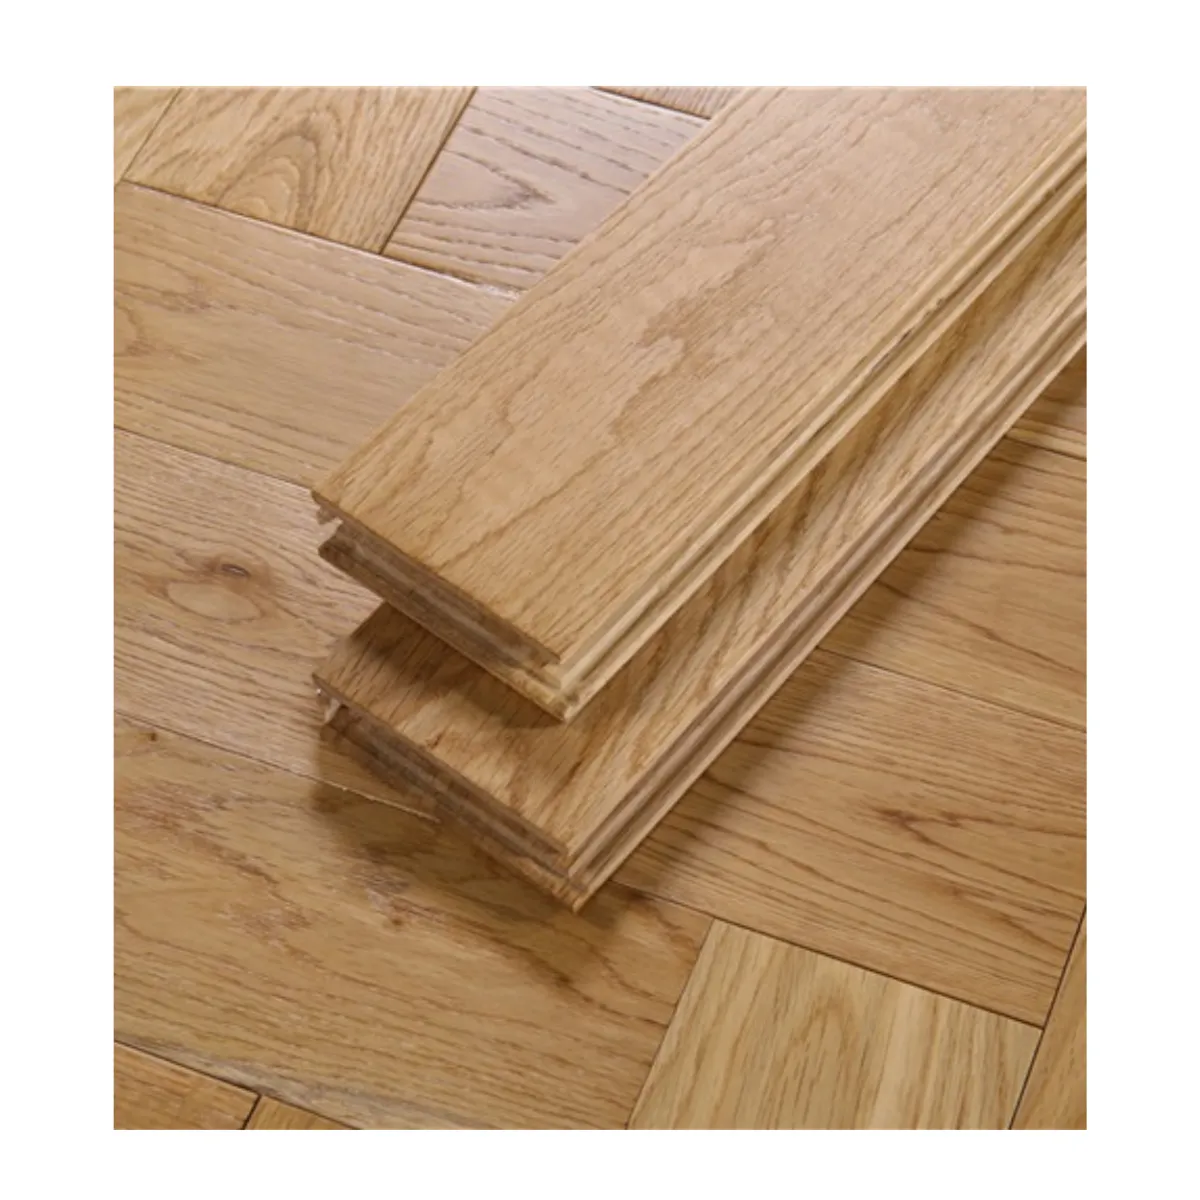 Pavimenti in legno massello di quercia pavimenti in legno per interni moderni bianchi pavimenti in legno parquet di quercia a spina di pesce